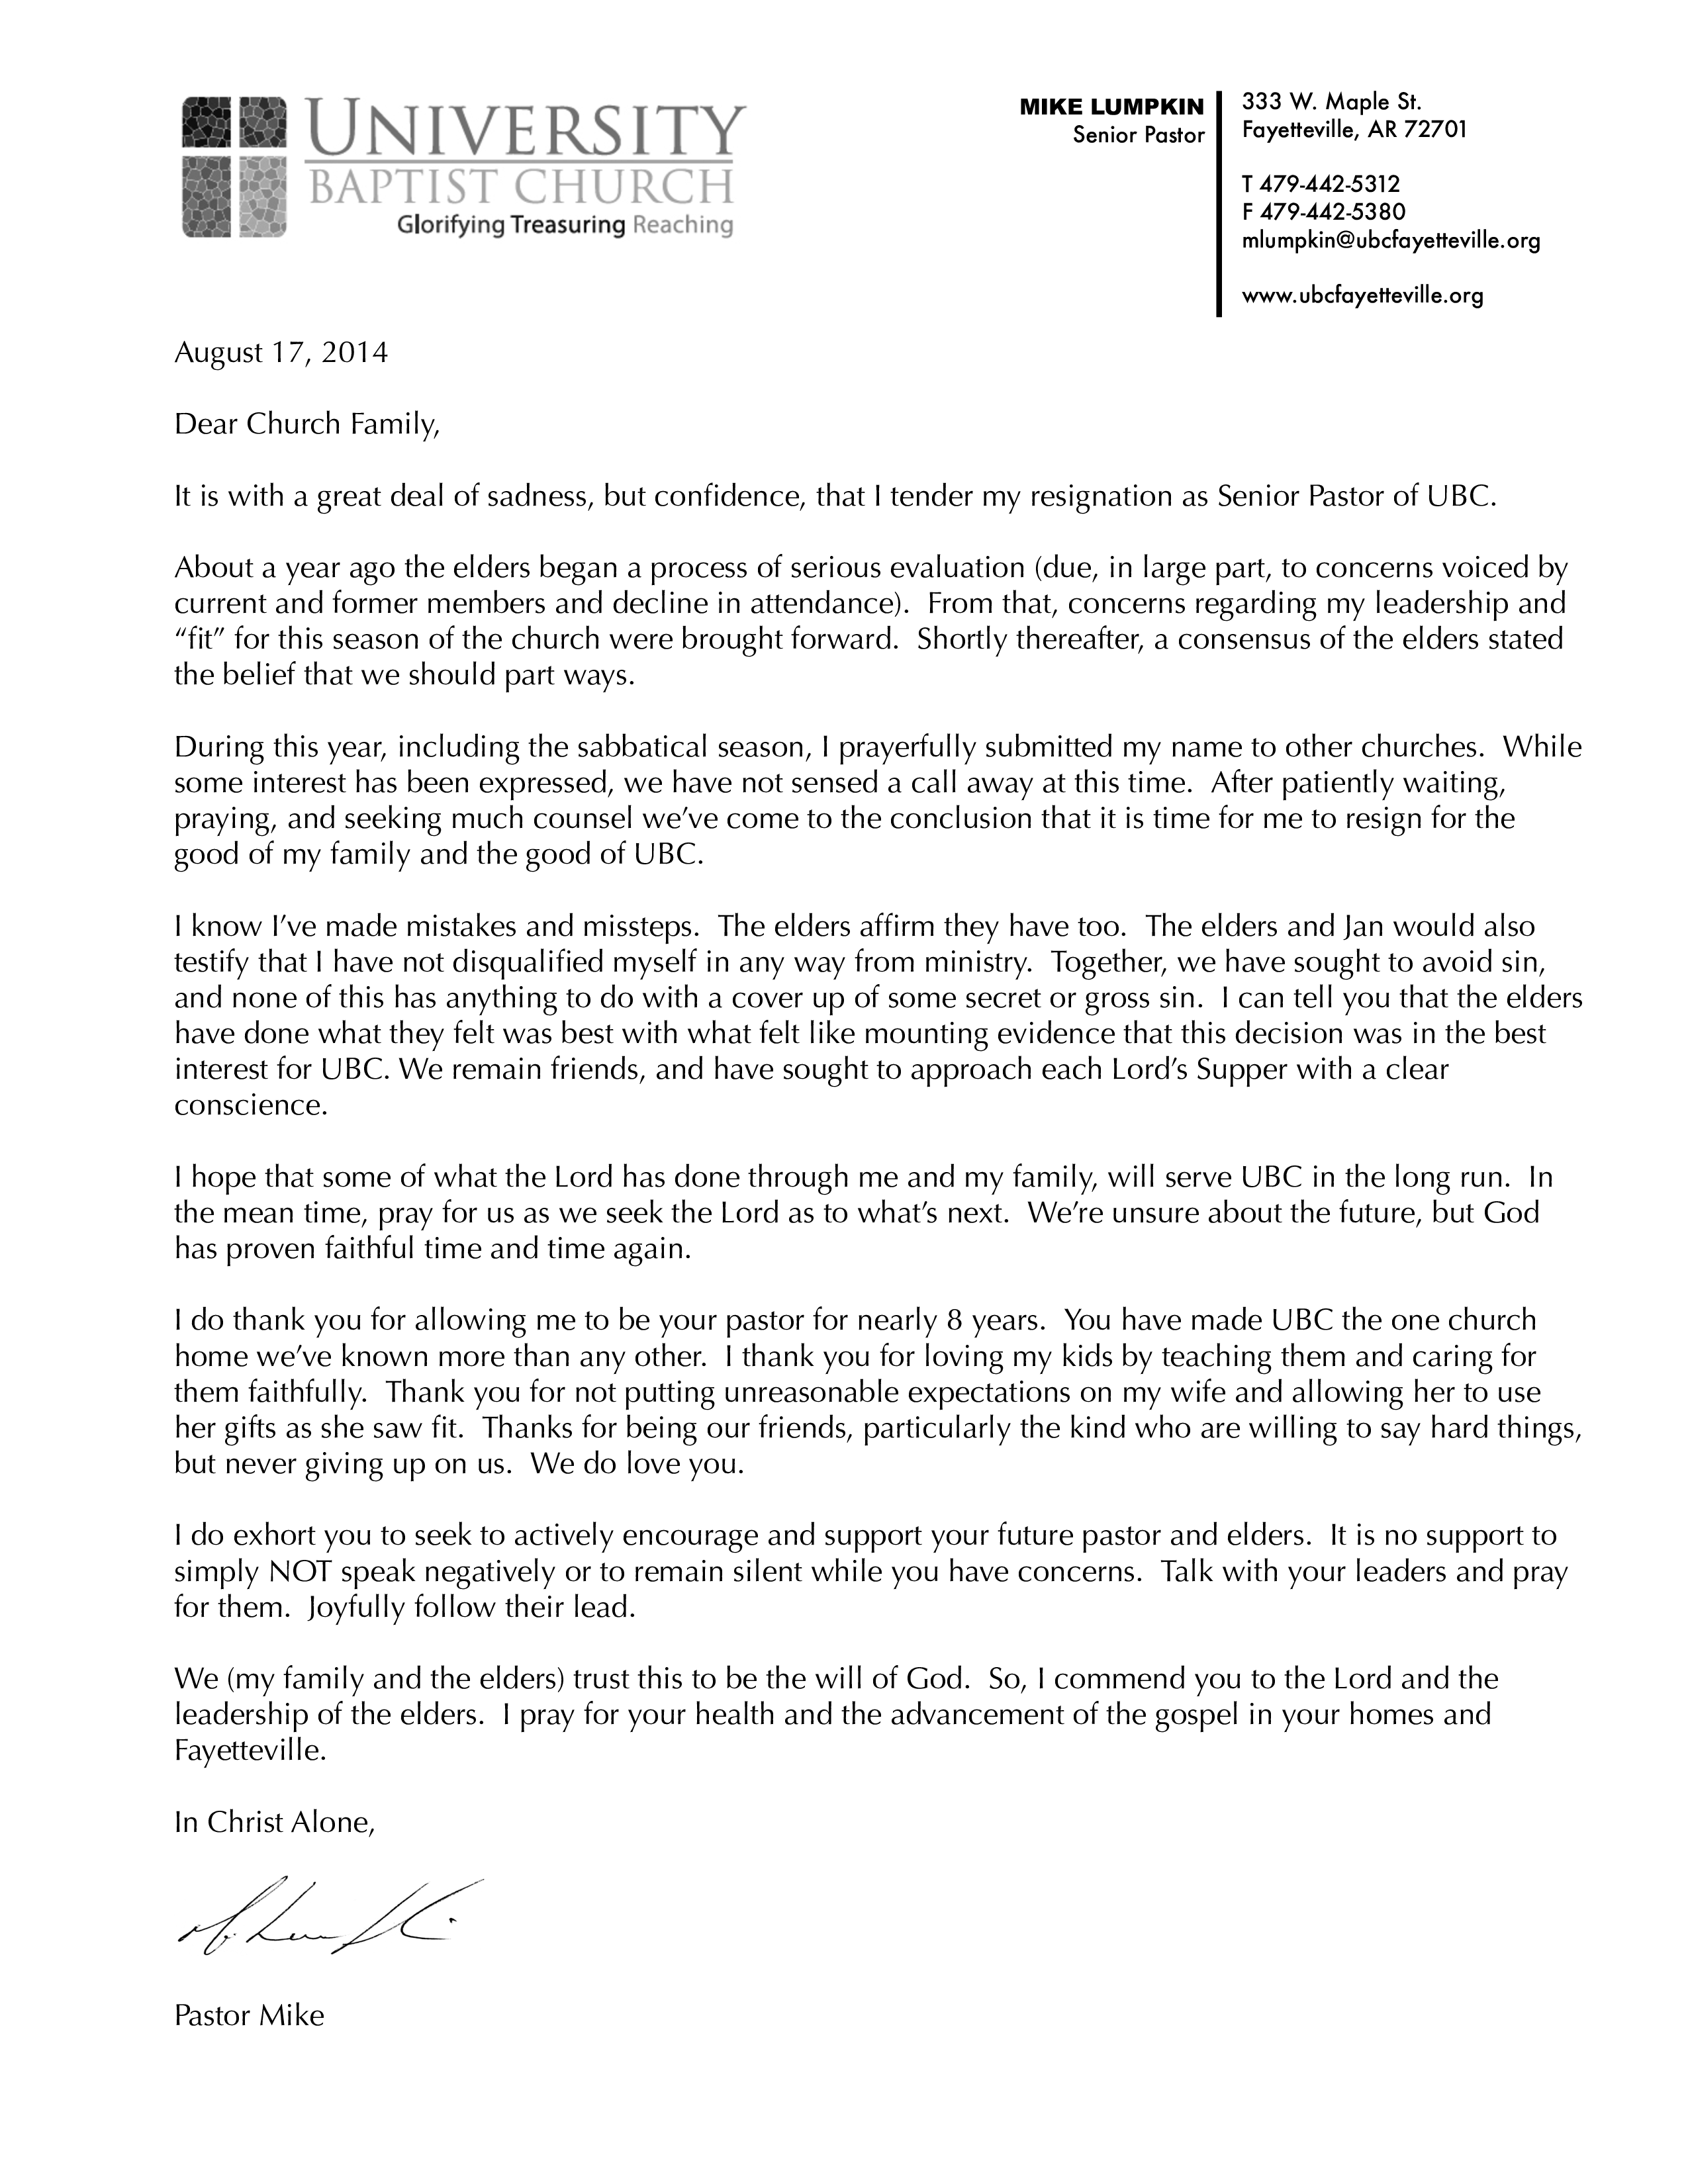 senior church pastor resignation letter plantilla imagen principal